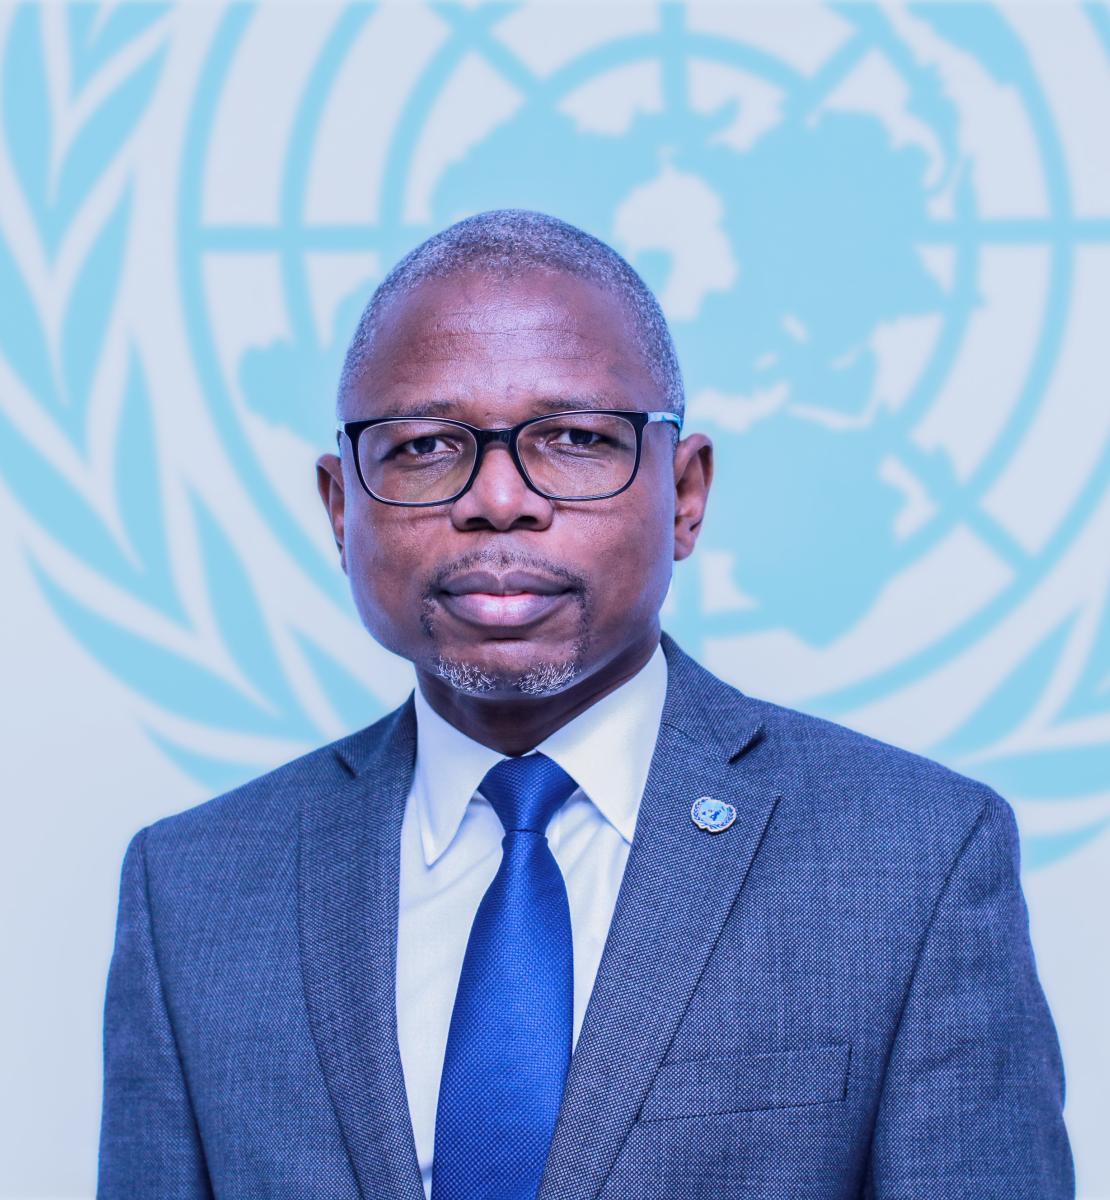 Фото мужчины в костюме и синем галстуке перед логотипом Организации Объединенных Наций.